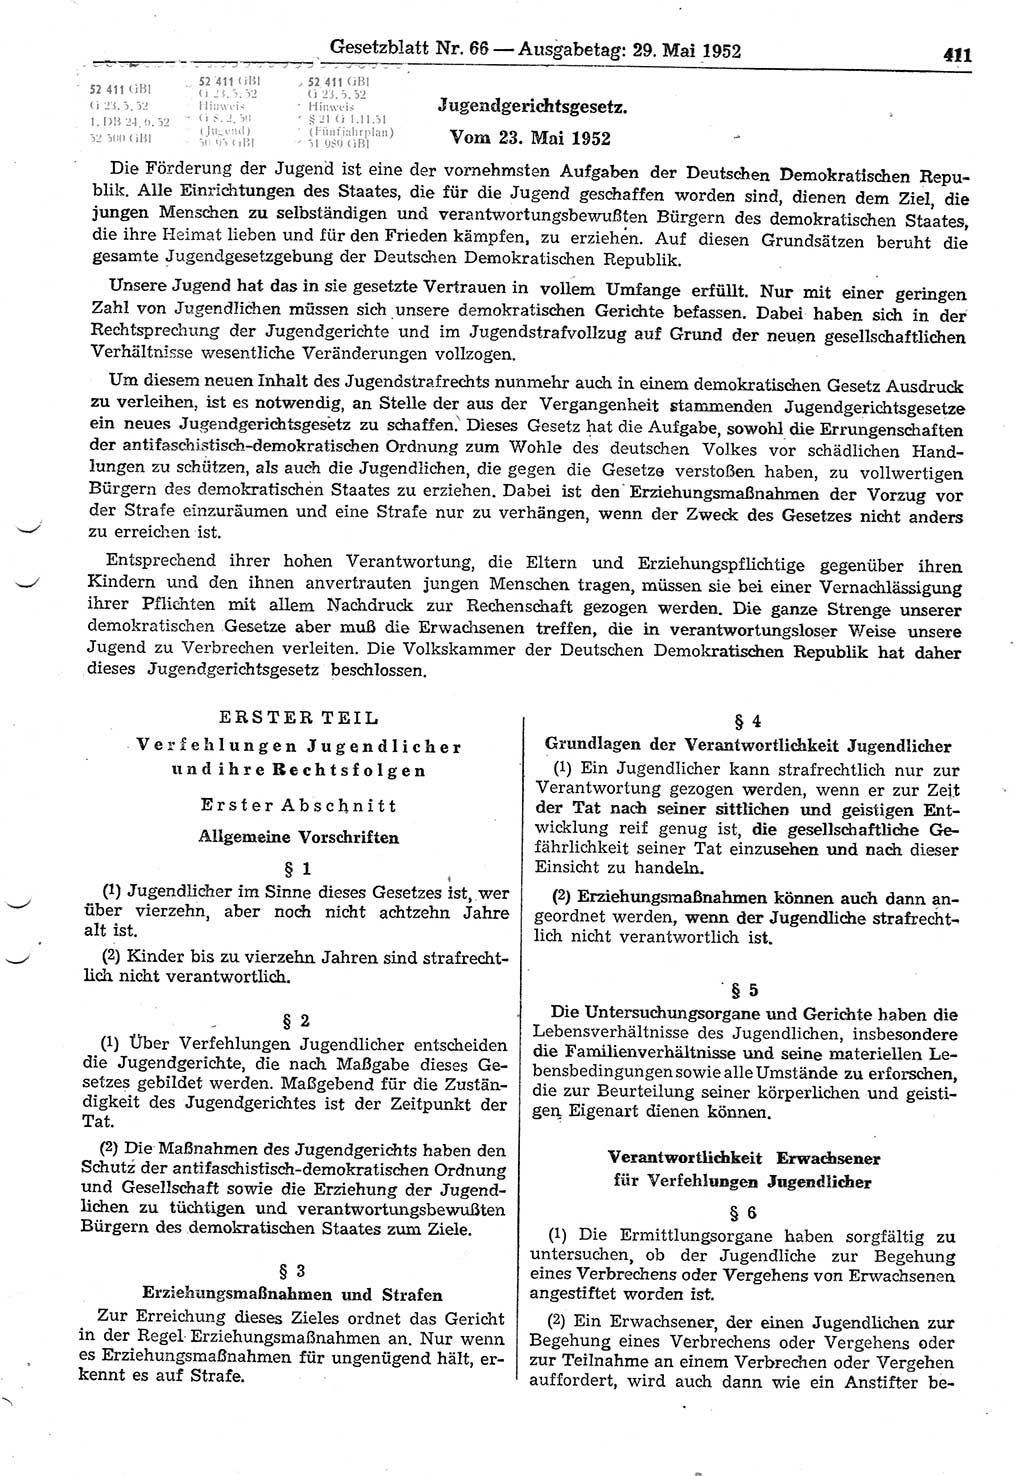 Gesetzblatt (GBl.) der Deutschen Demokratischen Republik (DDR) 1952, Seite 411 (GBl. DDR 1952, S. 411)